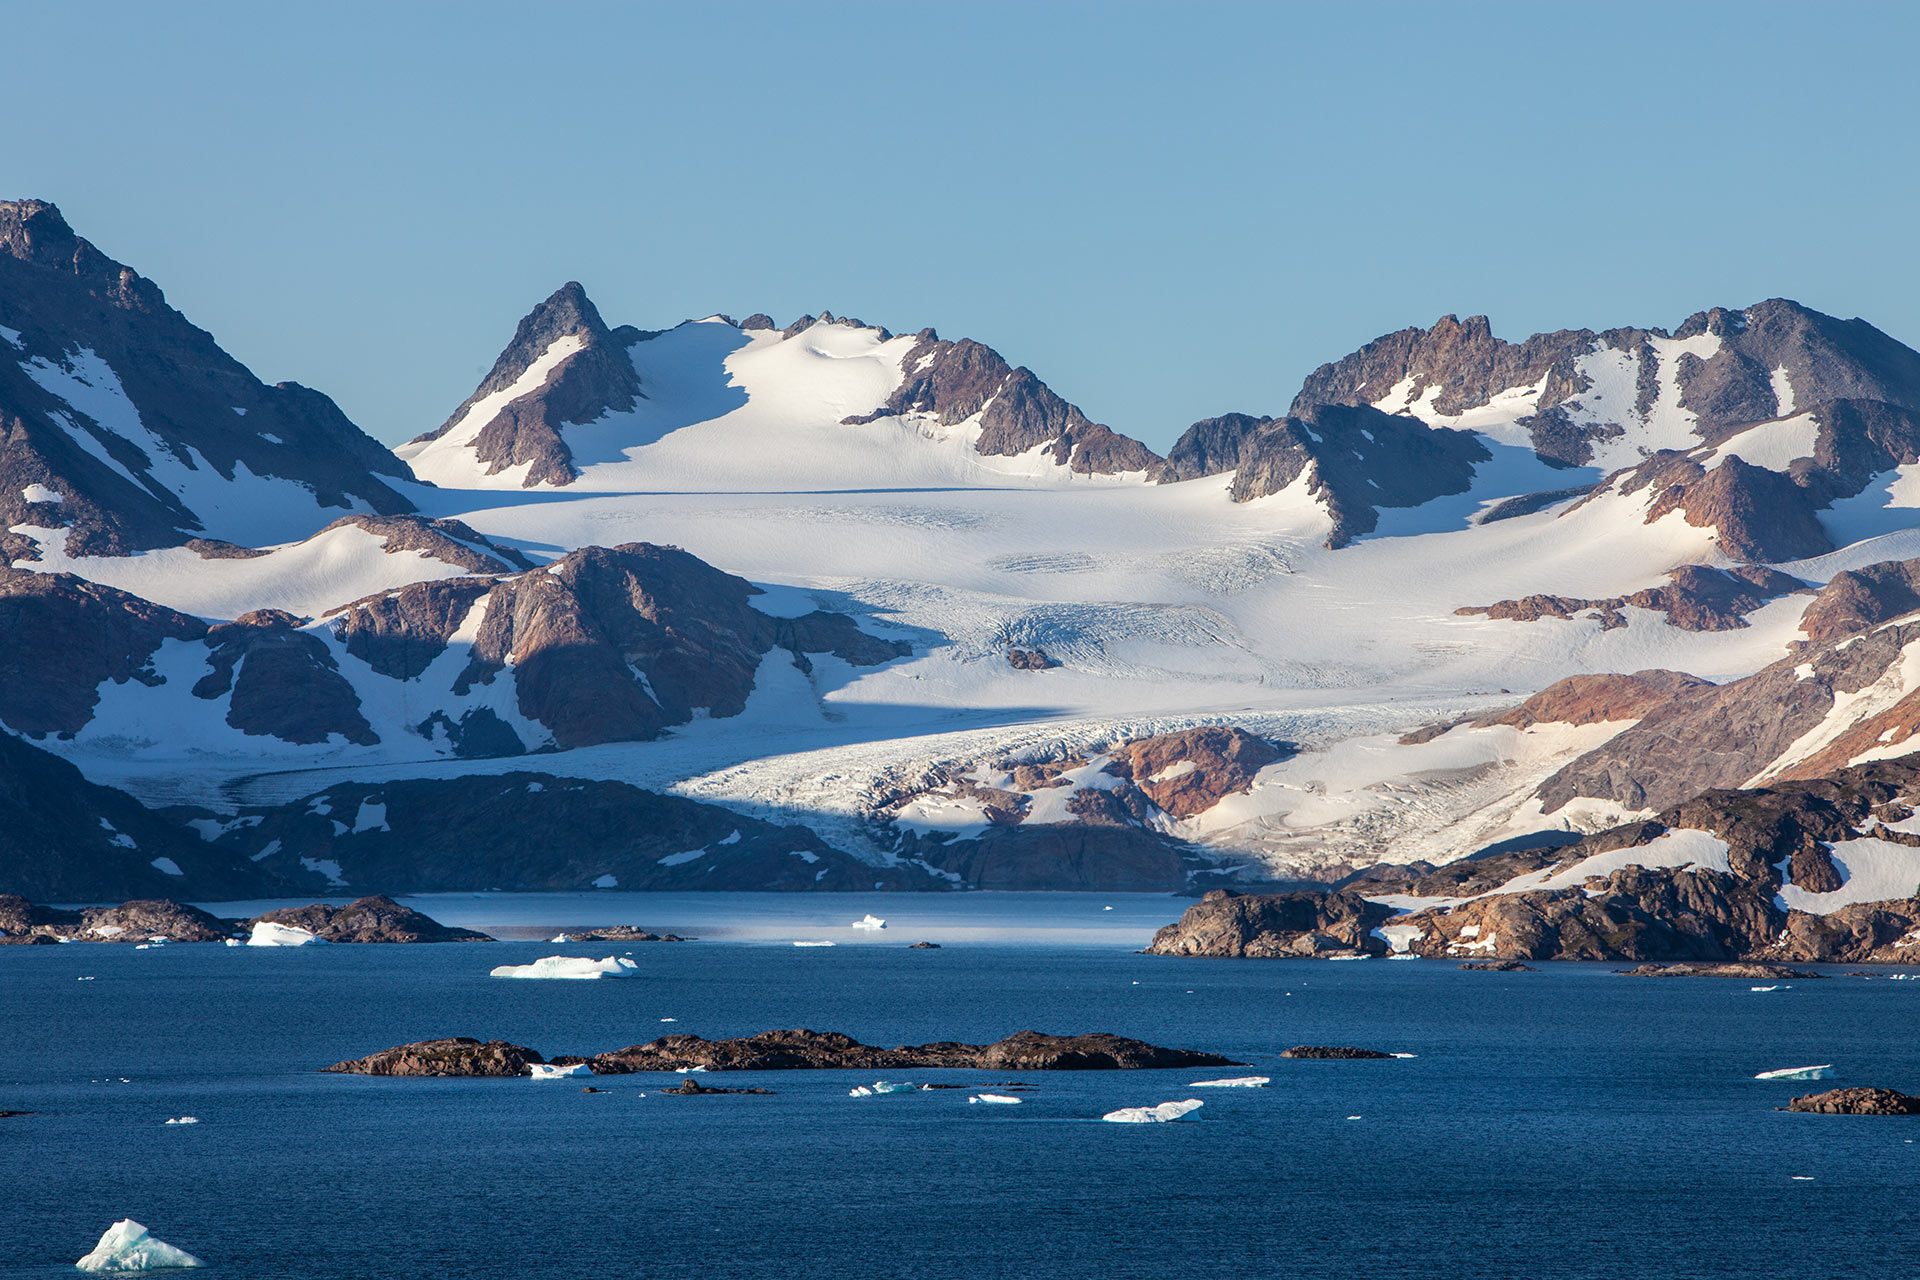 Apusiaajik Island and Glacier